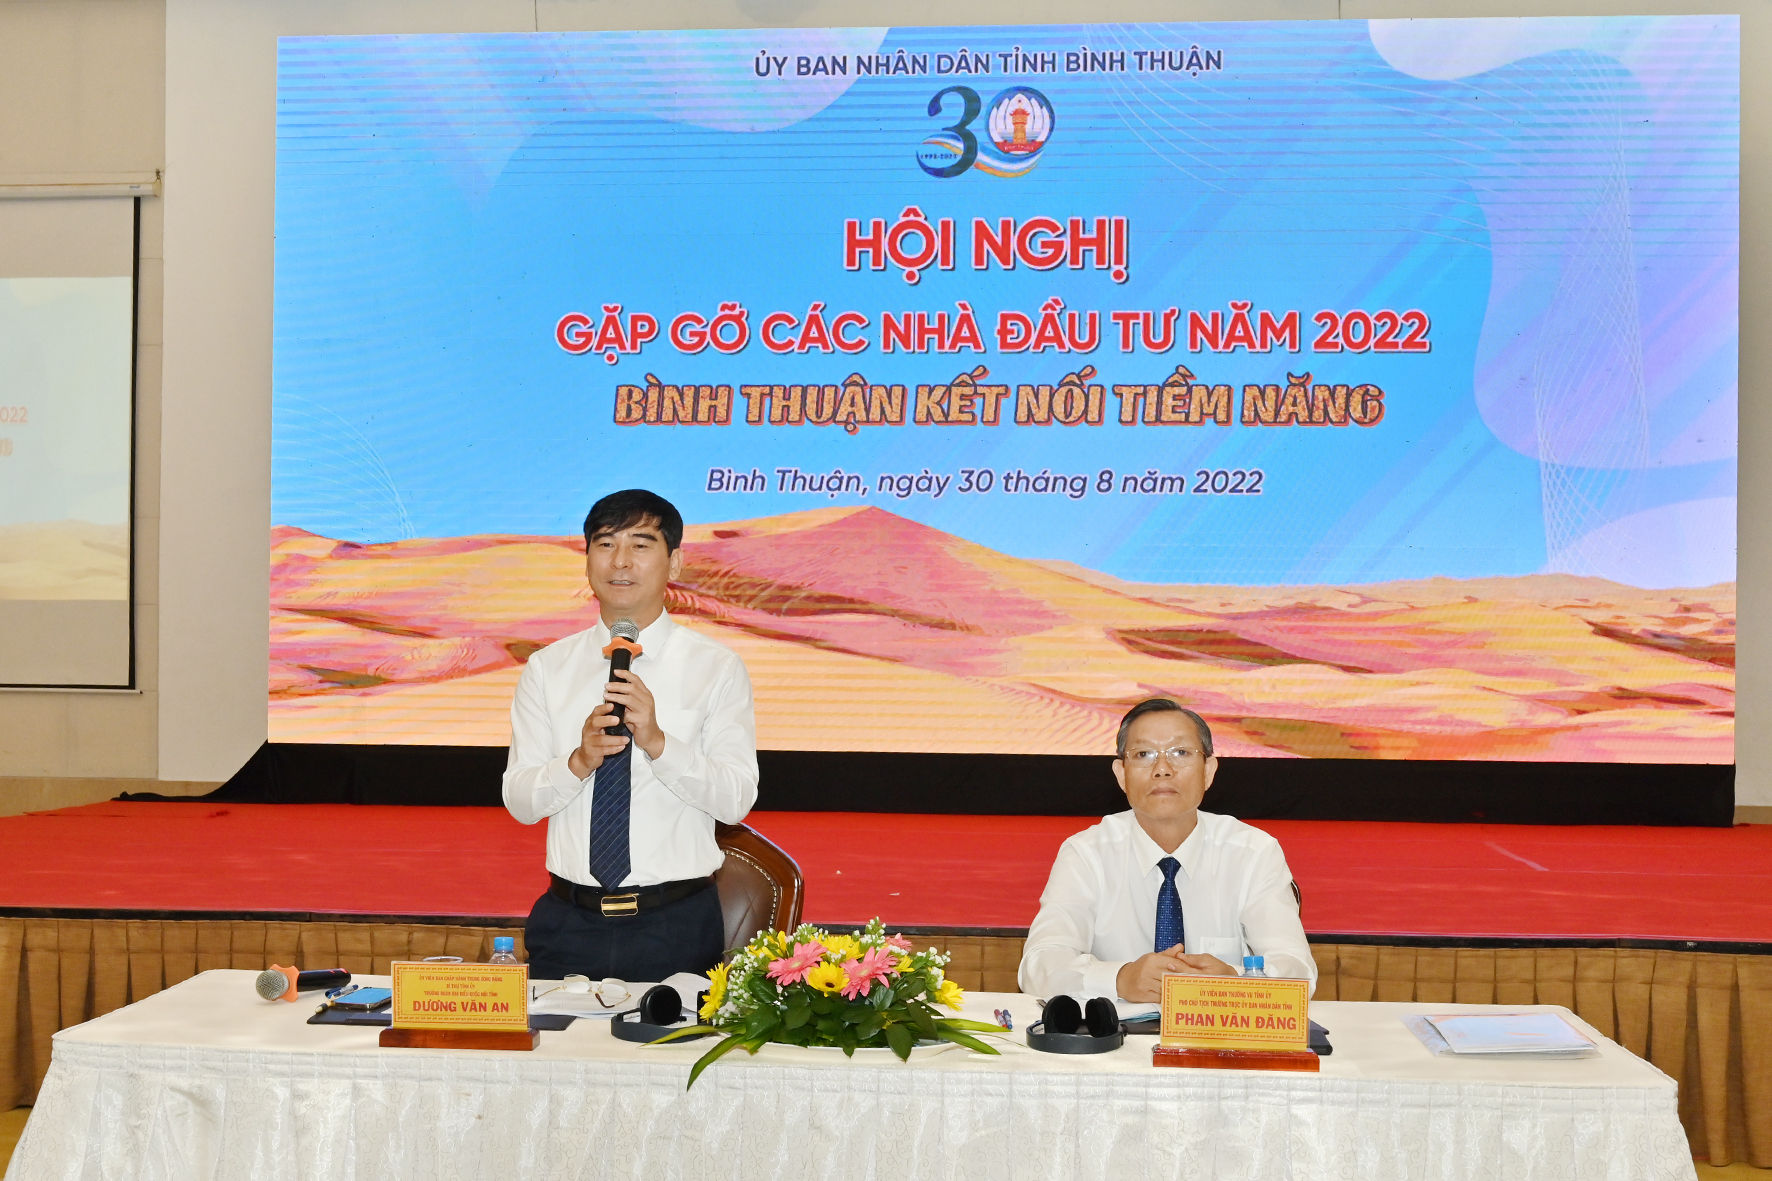 Hội nghị gặp gỡ các nhà đầu tư năm 2022- Bình Thuận kết nối tiềm năng - Ảnh 1.